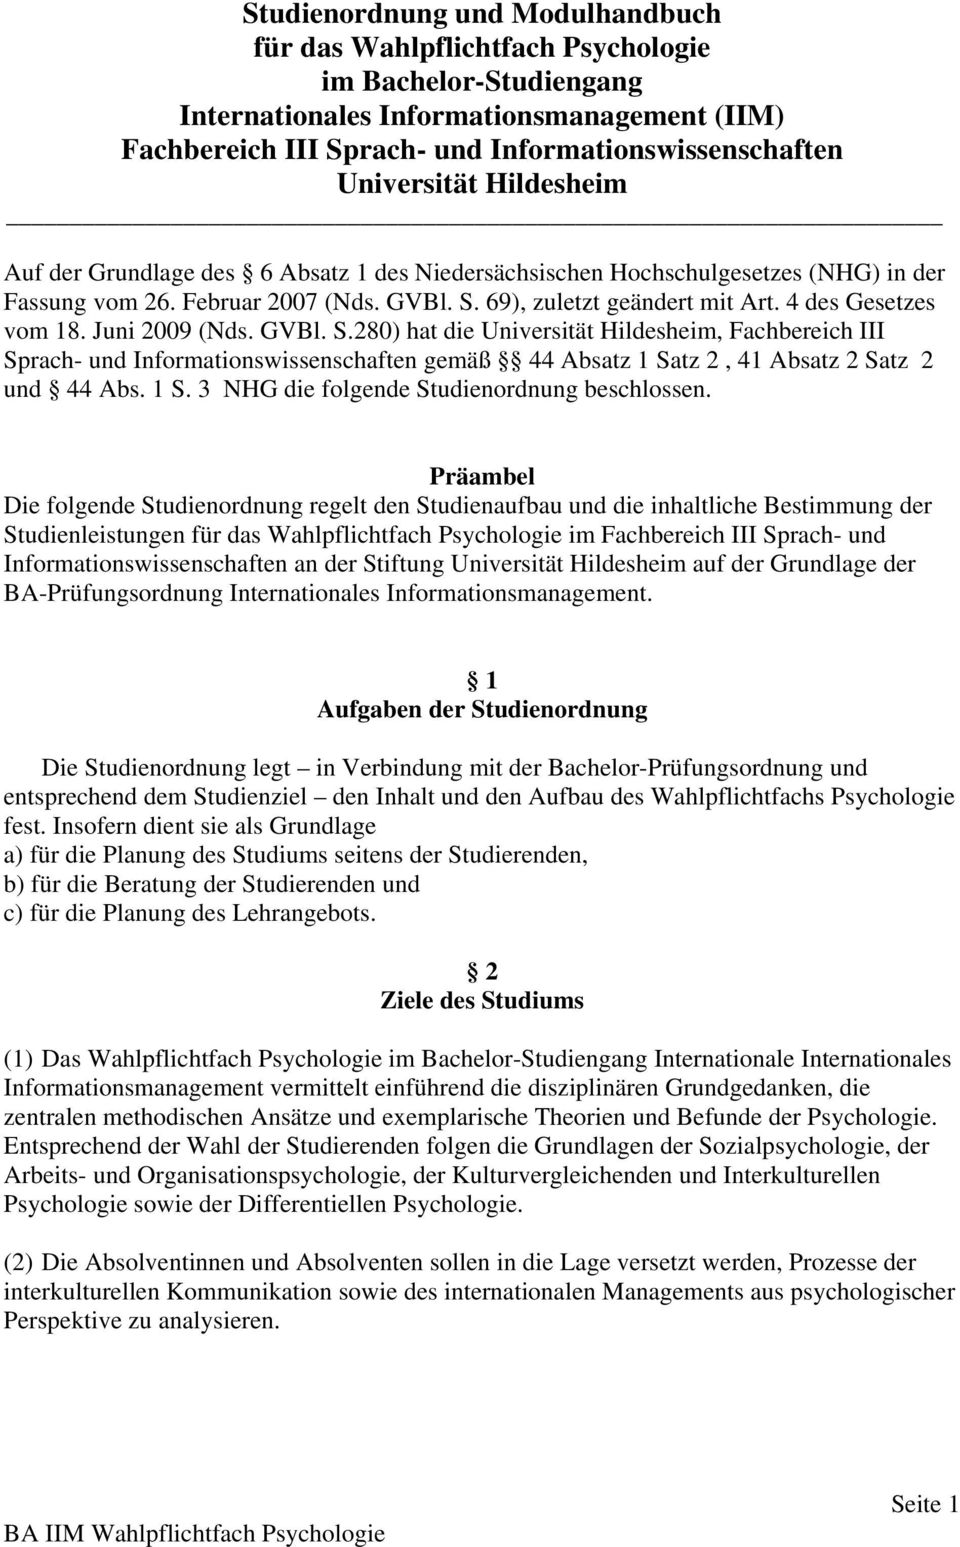 4 des Gesetzes vom 18. Juni 2009 (Nds. GVBl. S.280) hat die Universität Hildesheim, Fachbereich III Sprach- und Informationswissenschaften gemäß 44 Absatz 1 Sa